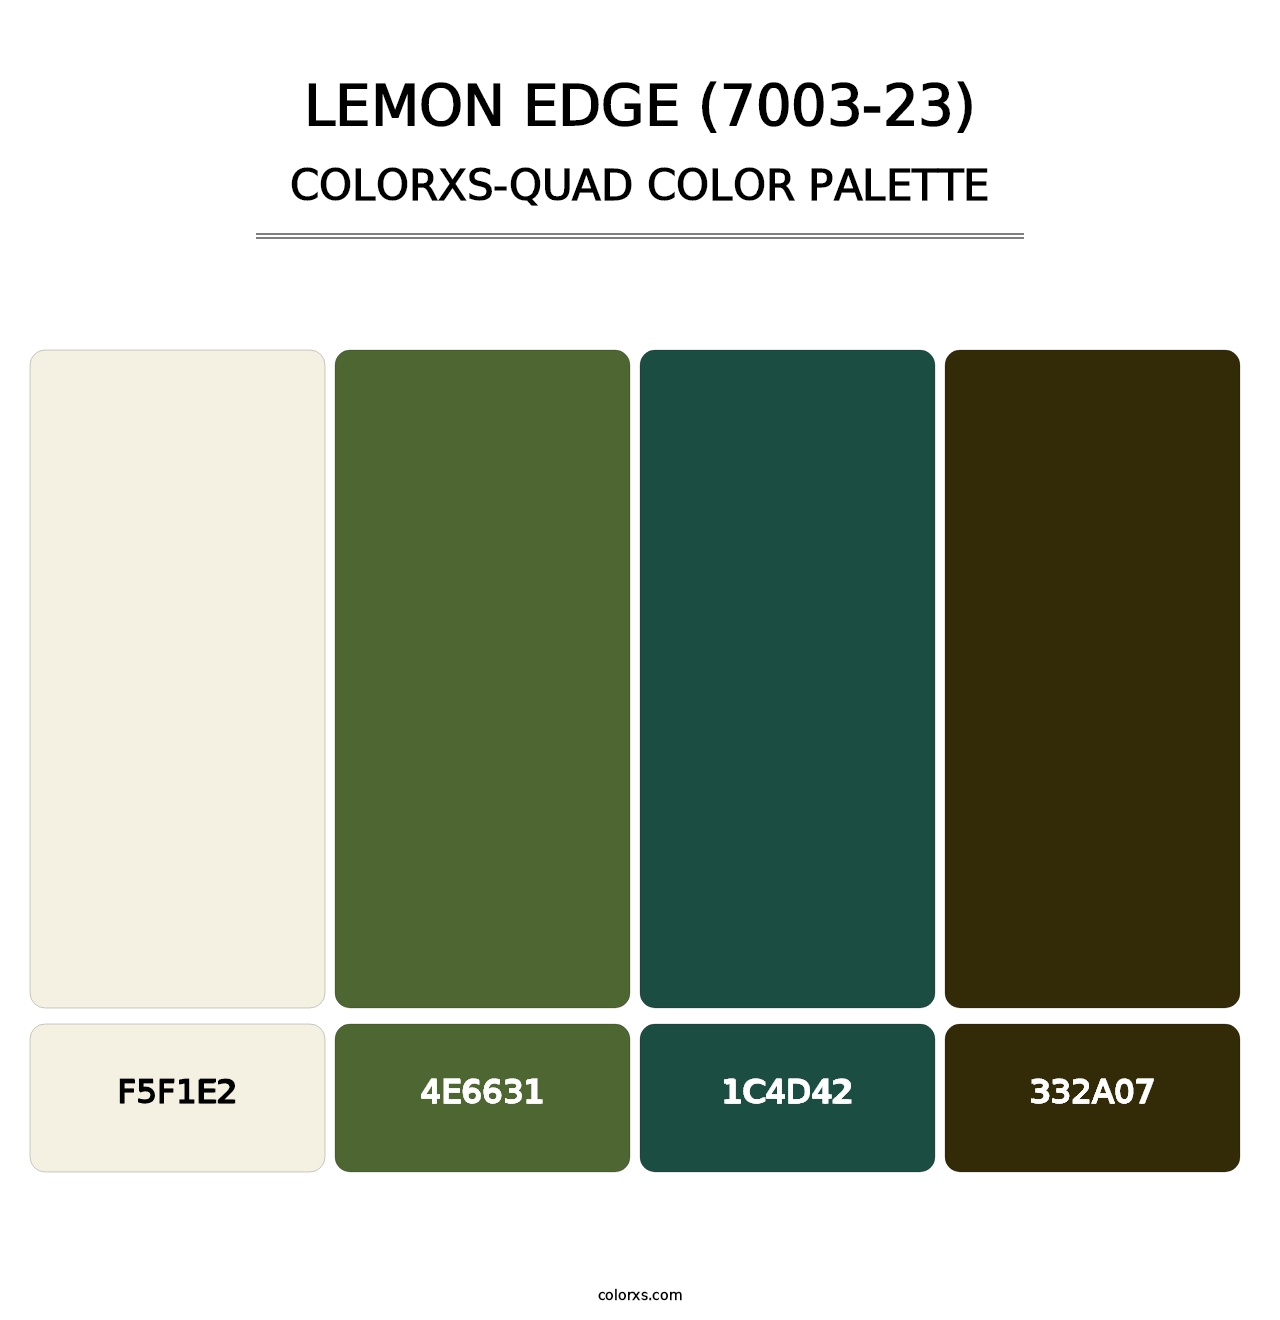 Lemon Edge (7003-23) - Colorxs Quad Palette